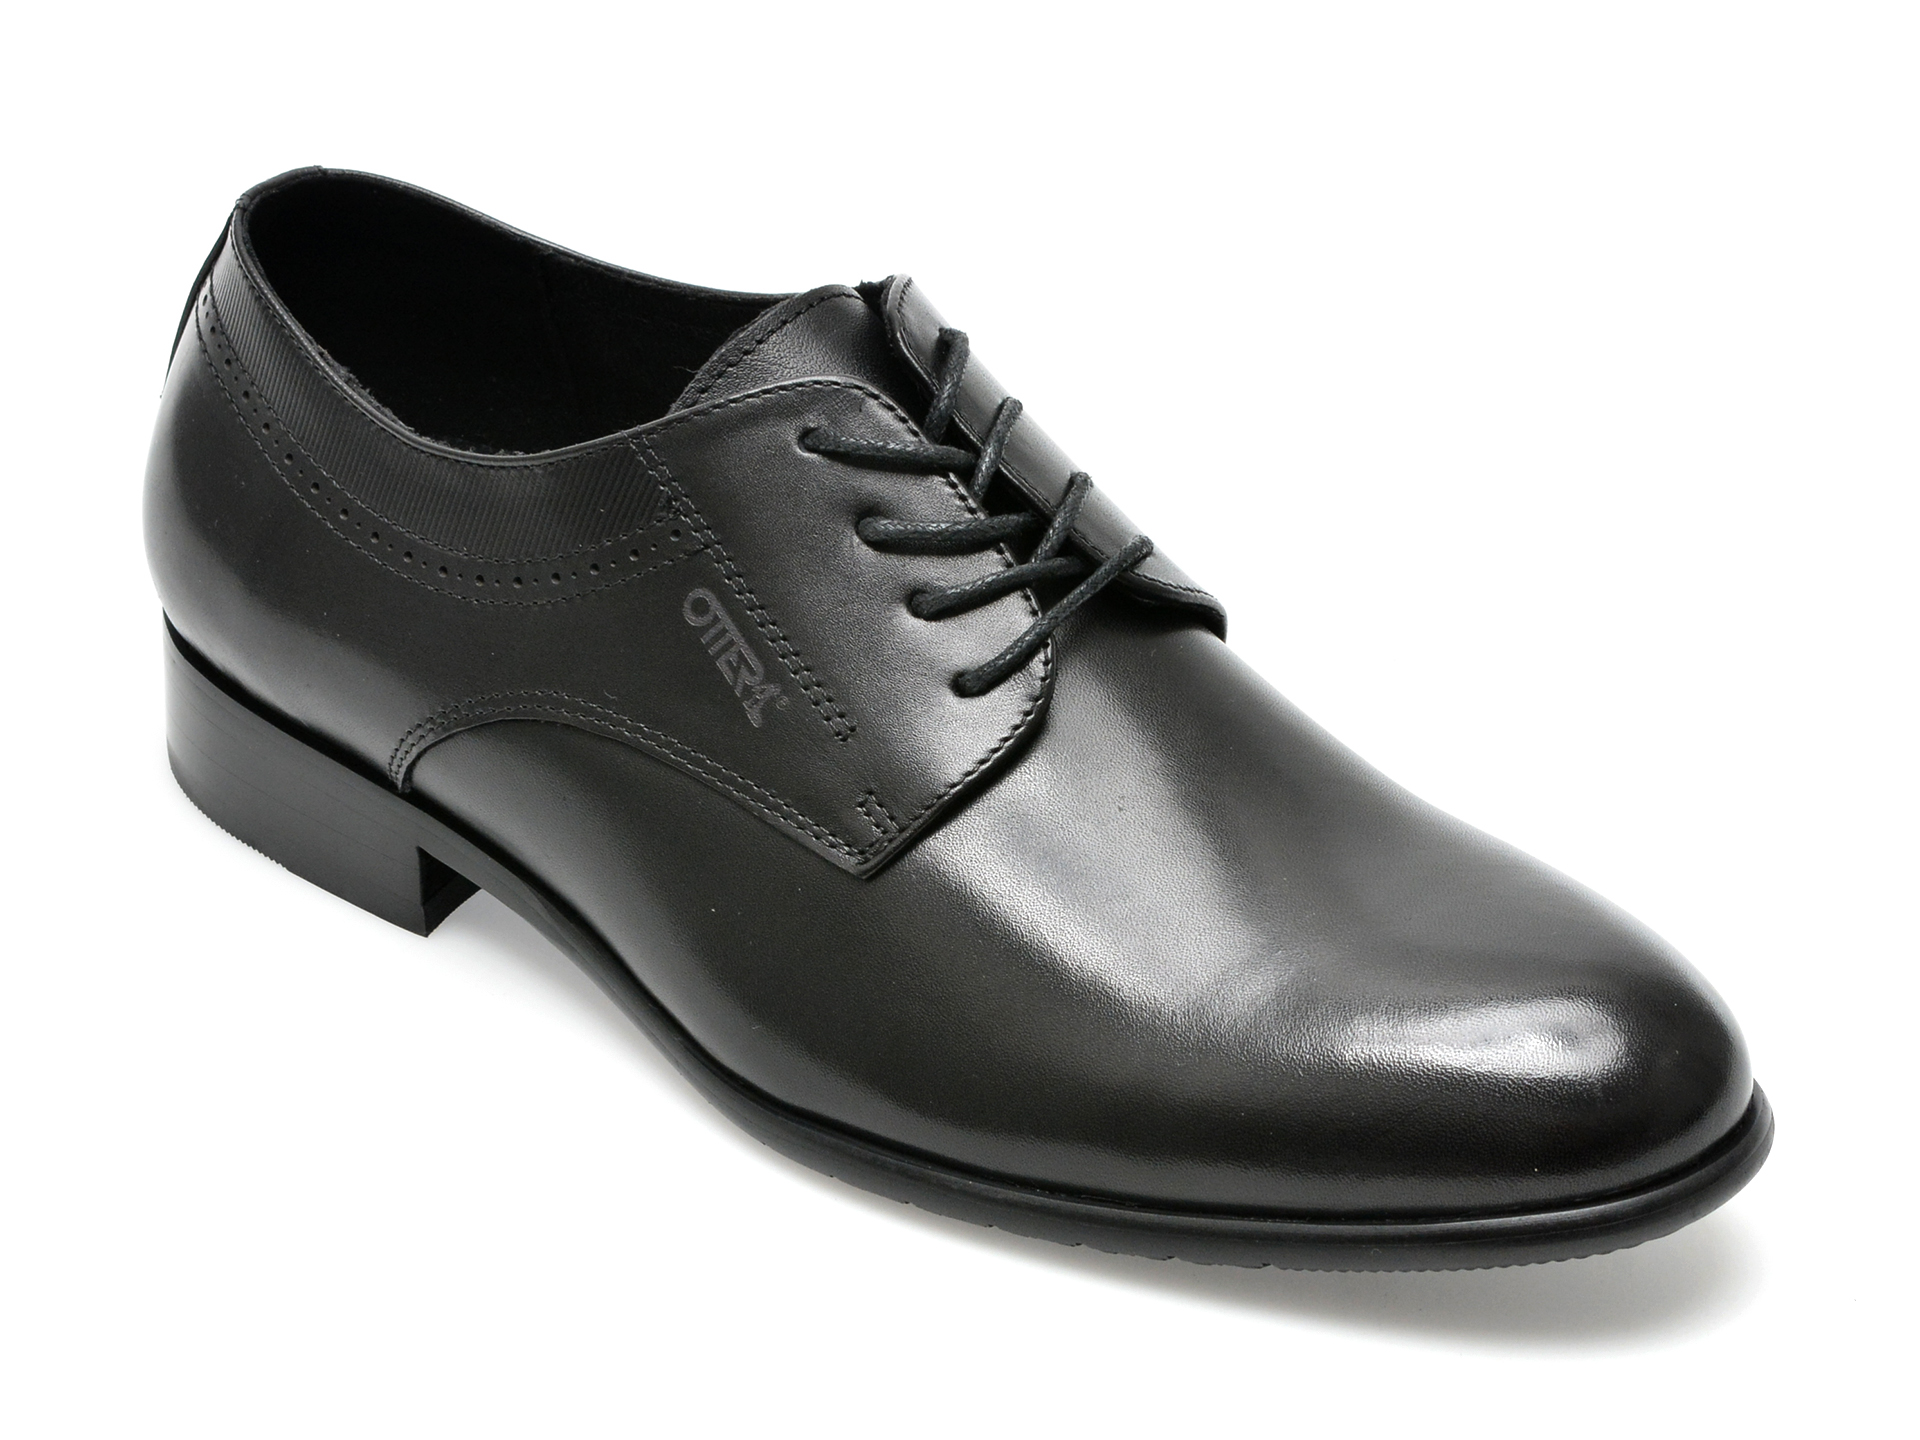 Pantofi OTTER negri, L120001, din piele naturala barbati 2023-03-24